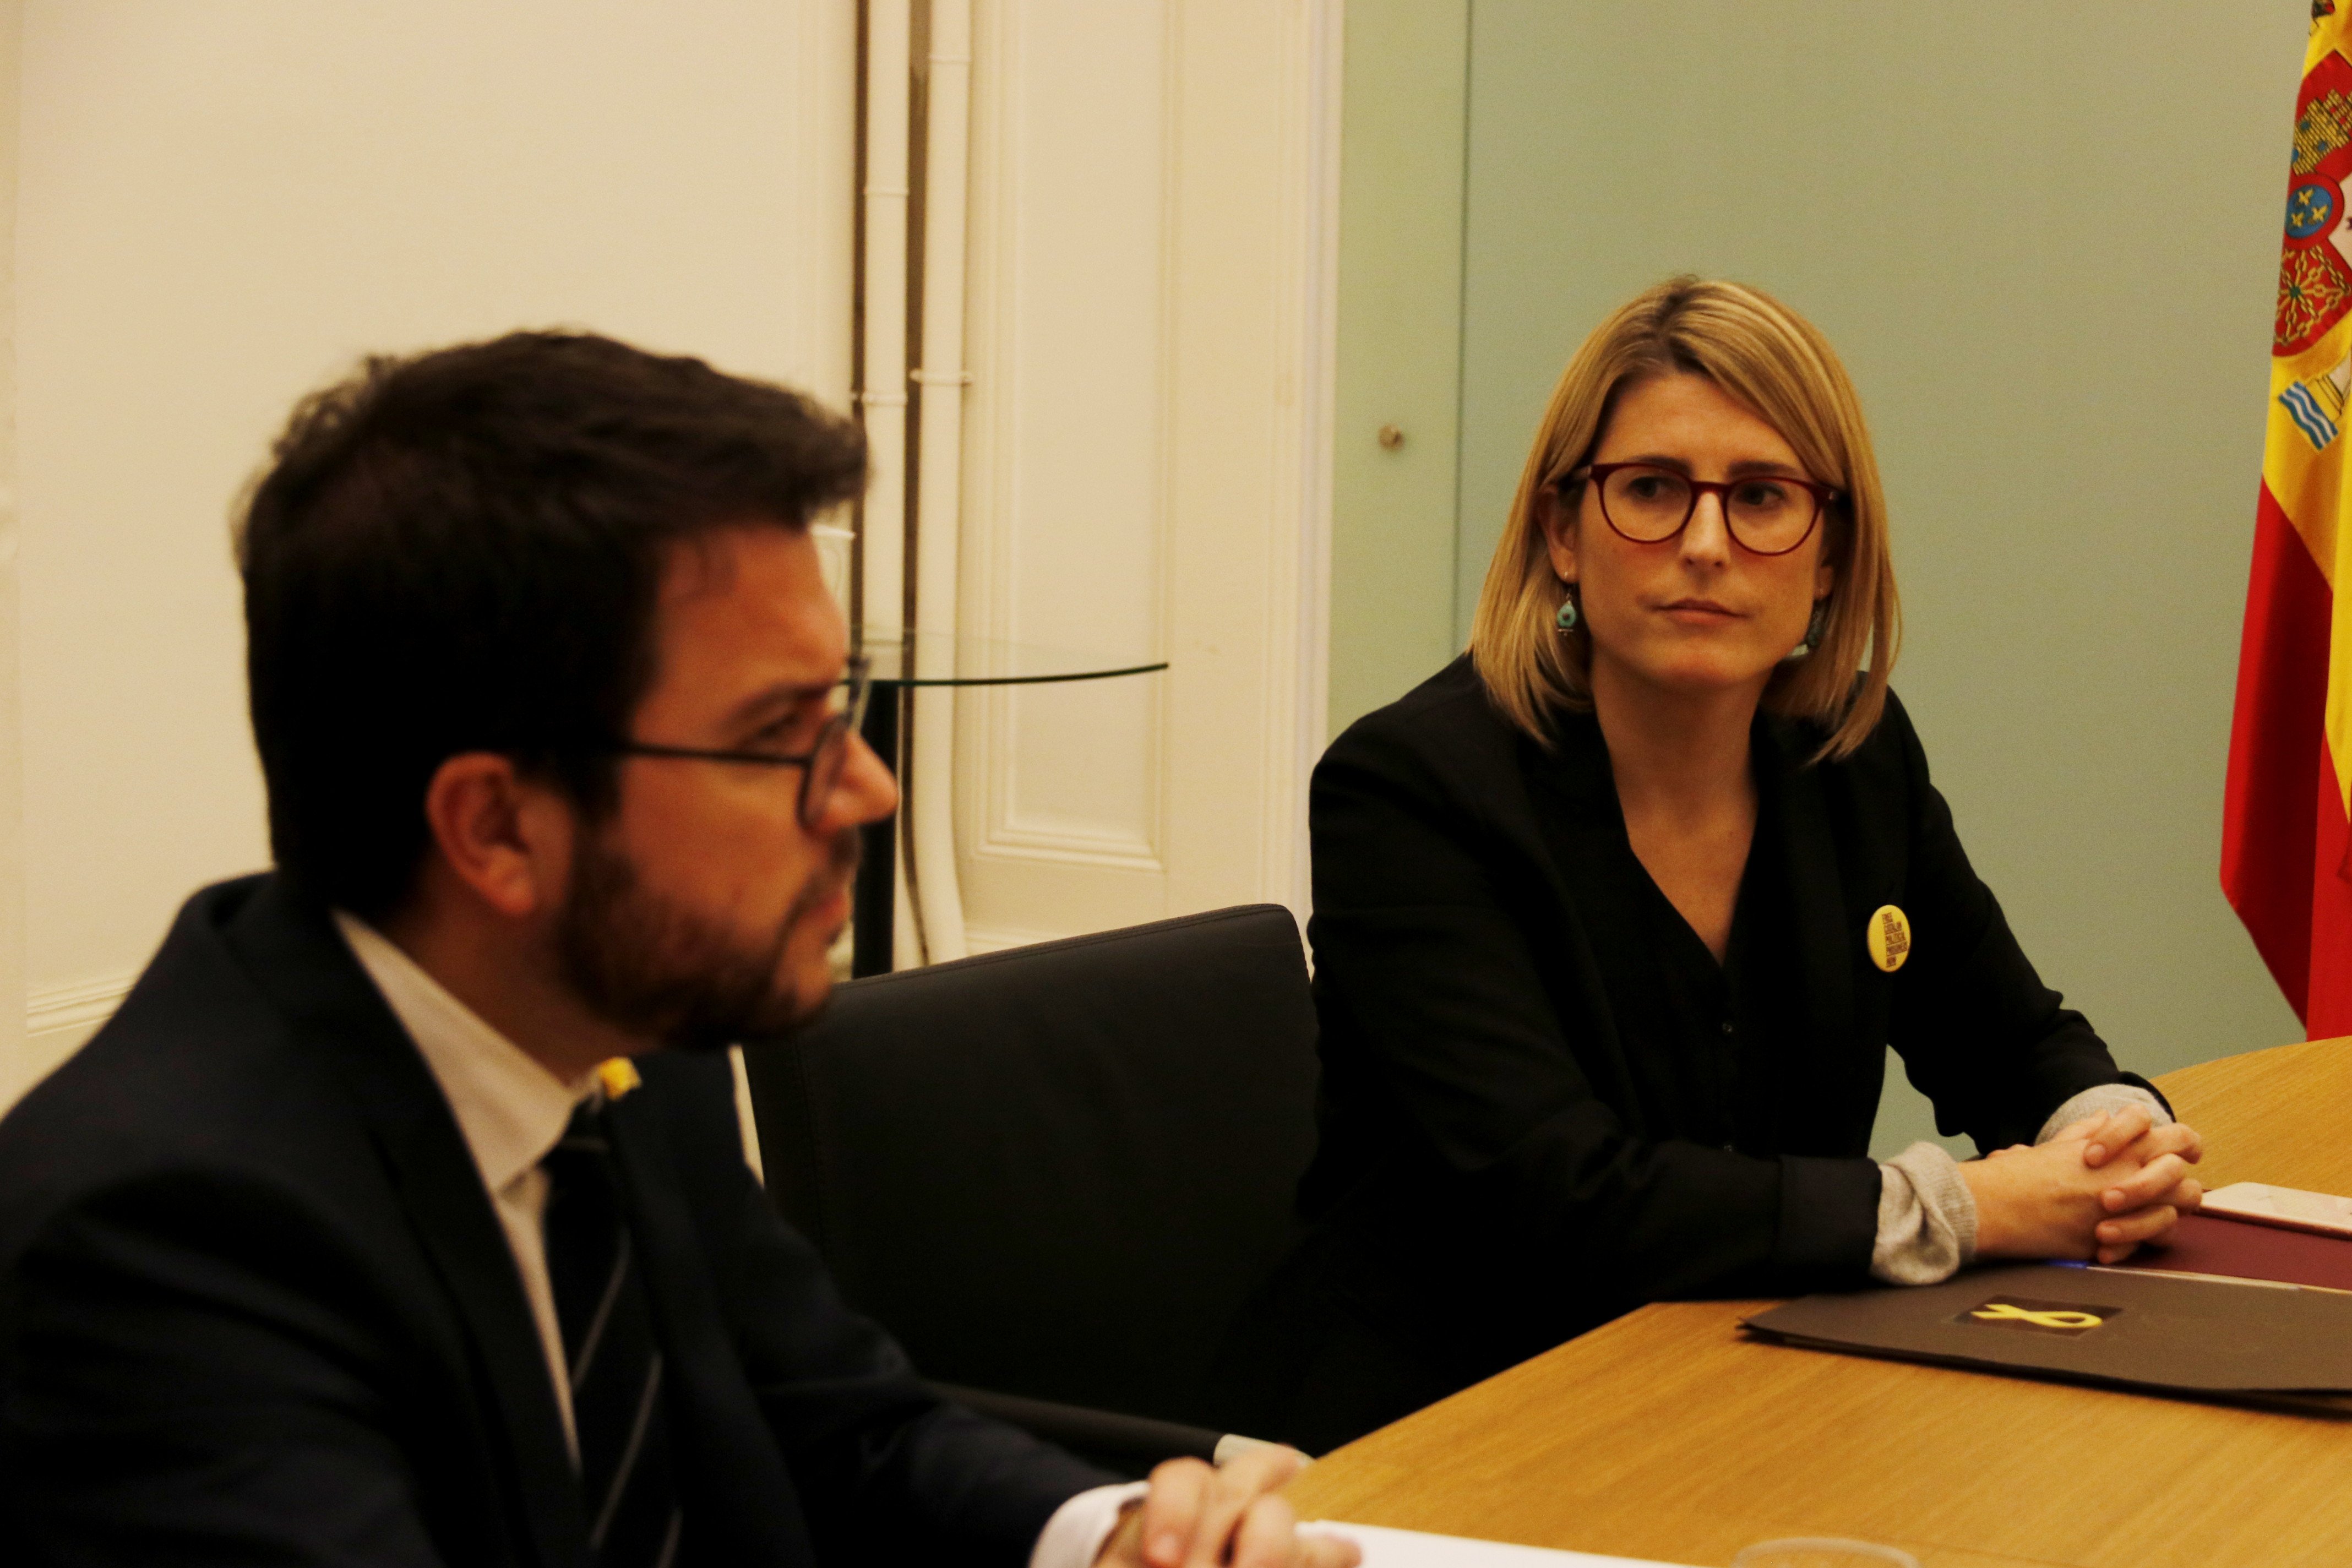 Aragonès i Artadi troben "inacceptable" la justificació de Calvo sobre les detencions